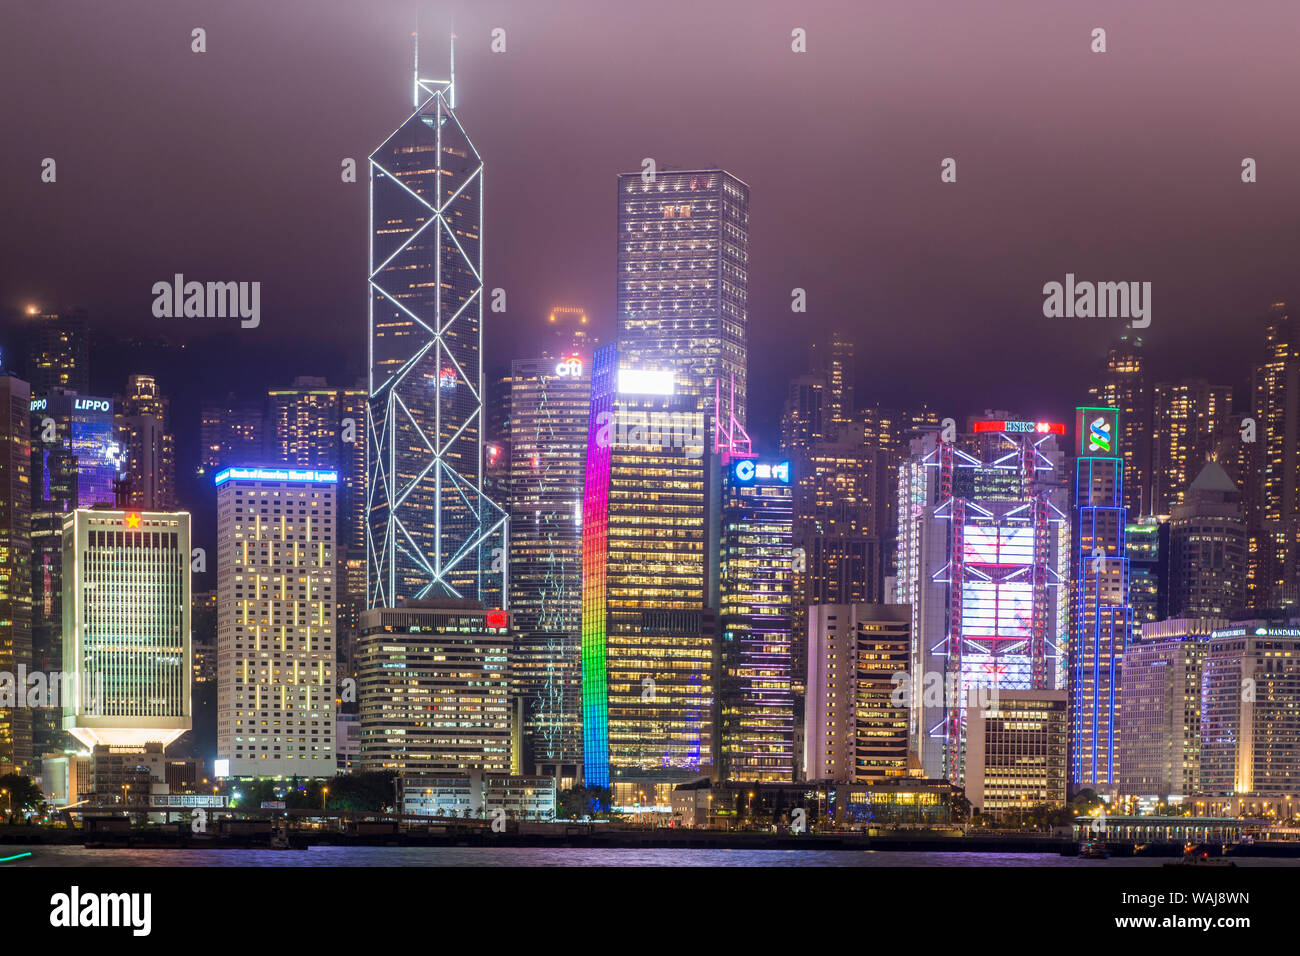 L'île de Hong Kong skyline et le port de Victoria, Hong Kong, Chine. Banque D'Images